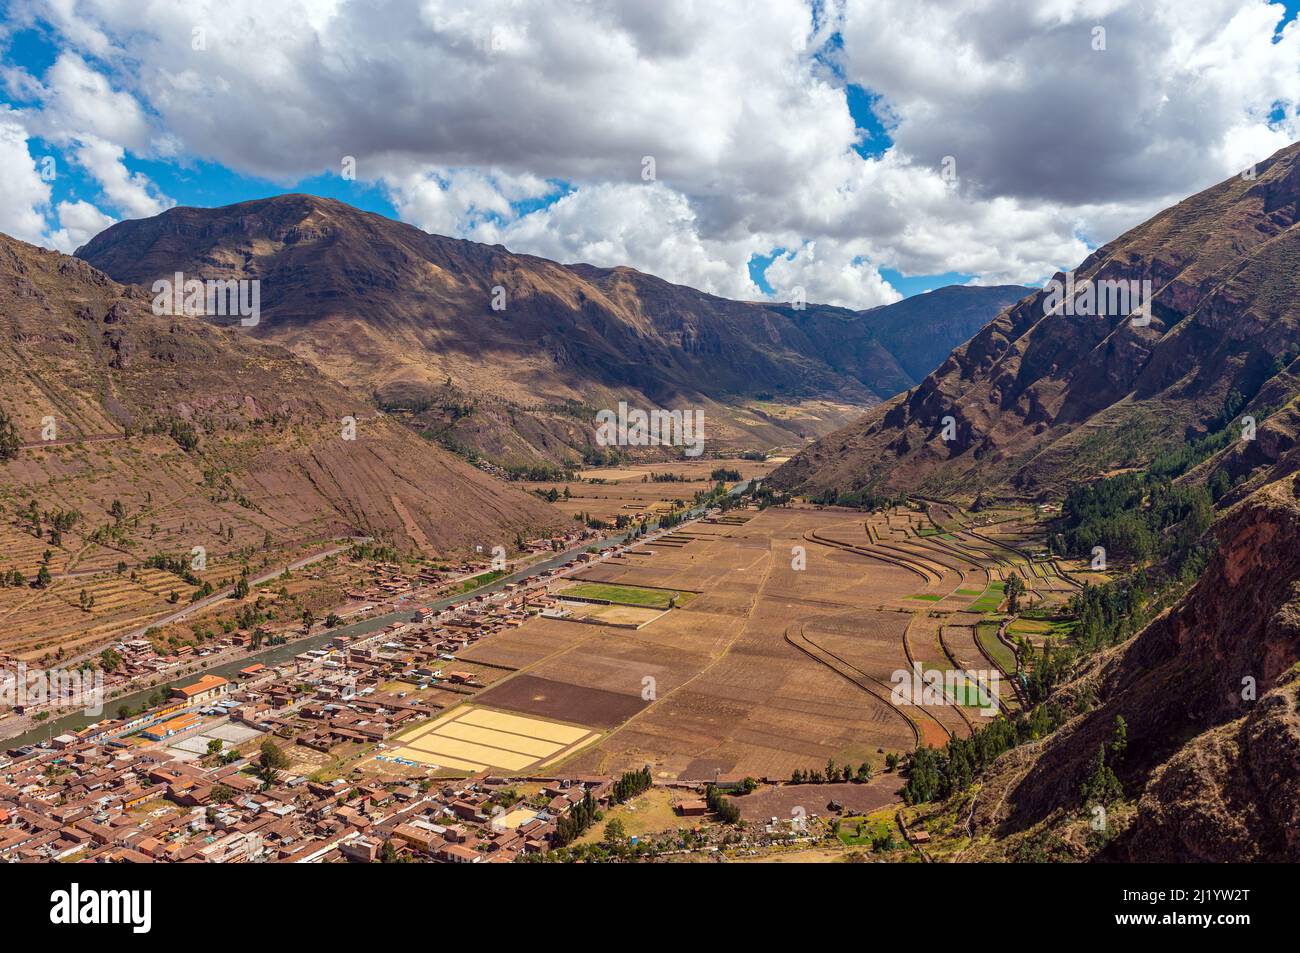 Montagnes des Andes paysage dans la Vallée Sacrée de l'Inca avec la rivière Urubamba et le village de Pisac, province de Cusco, Pérou. Banque D'Images